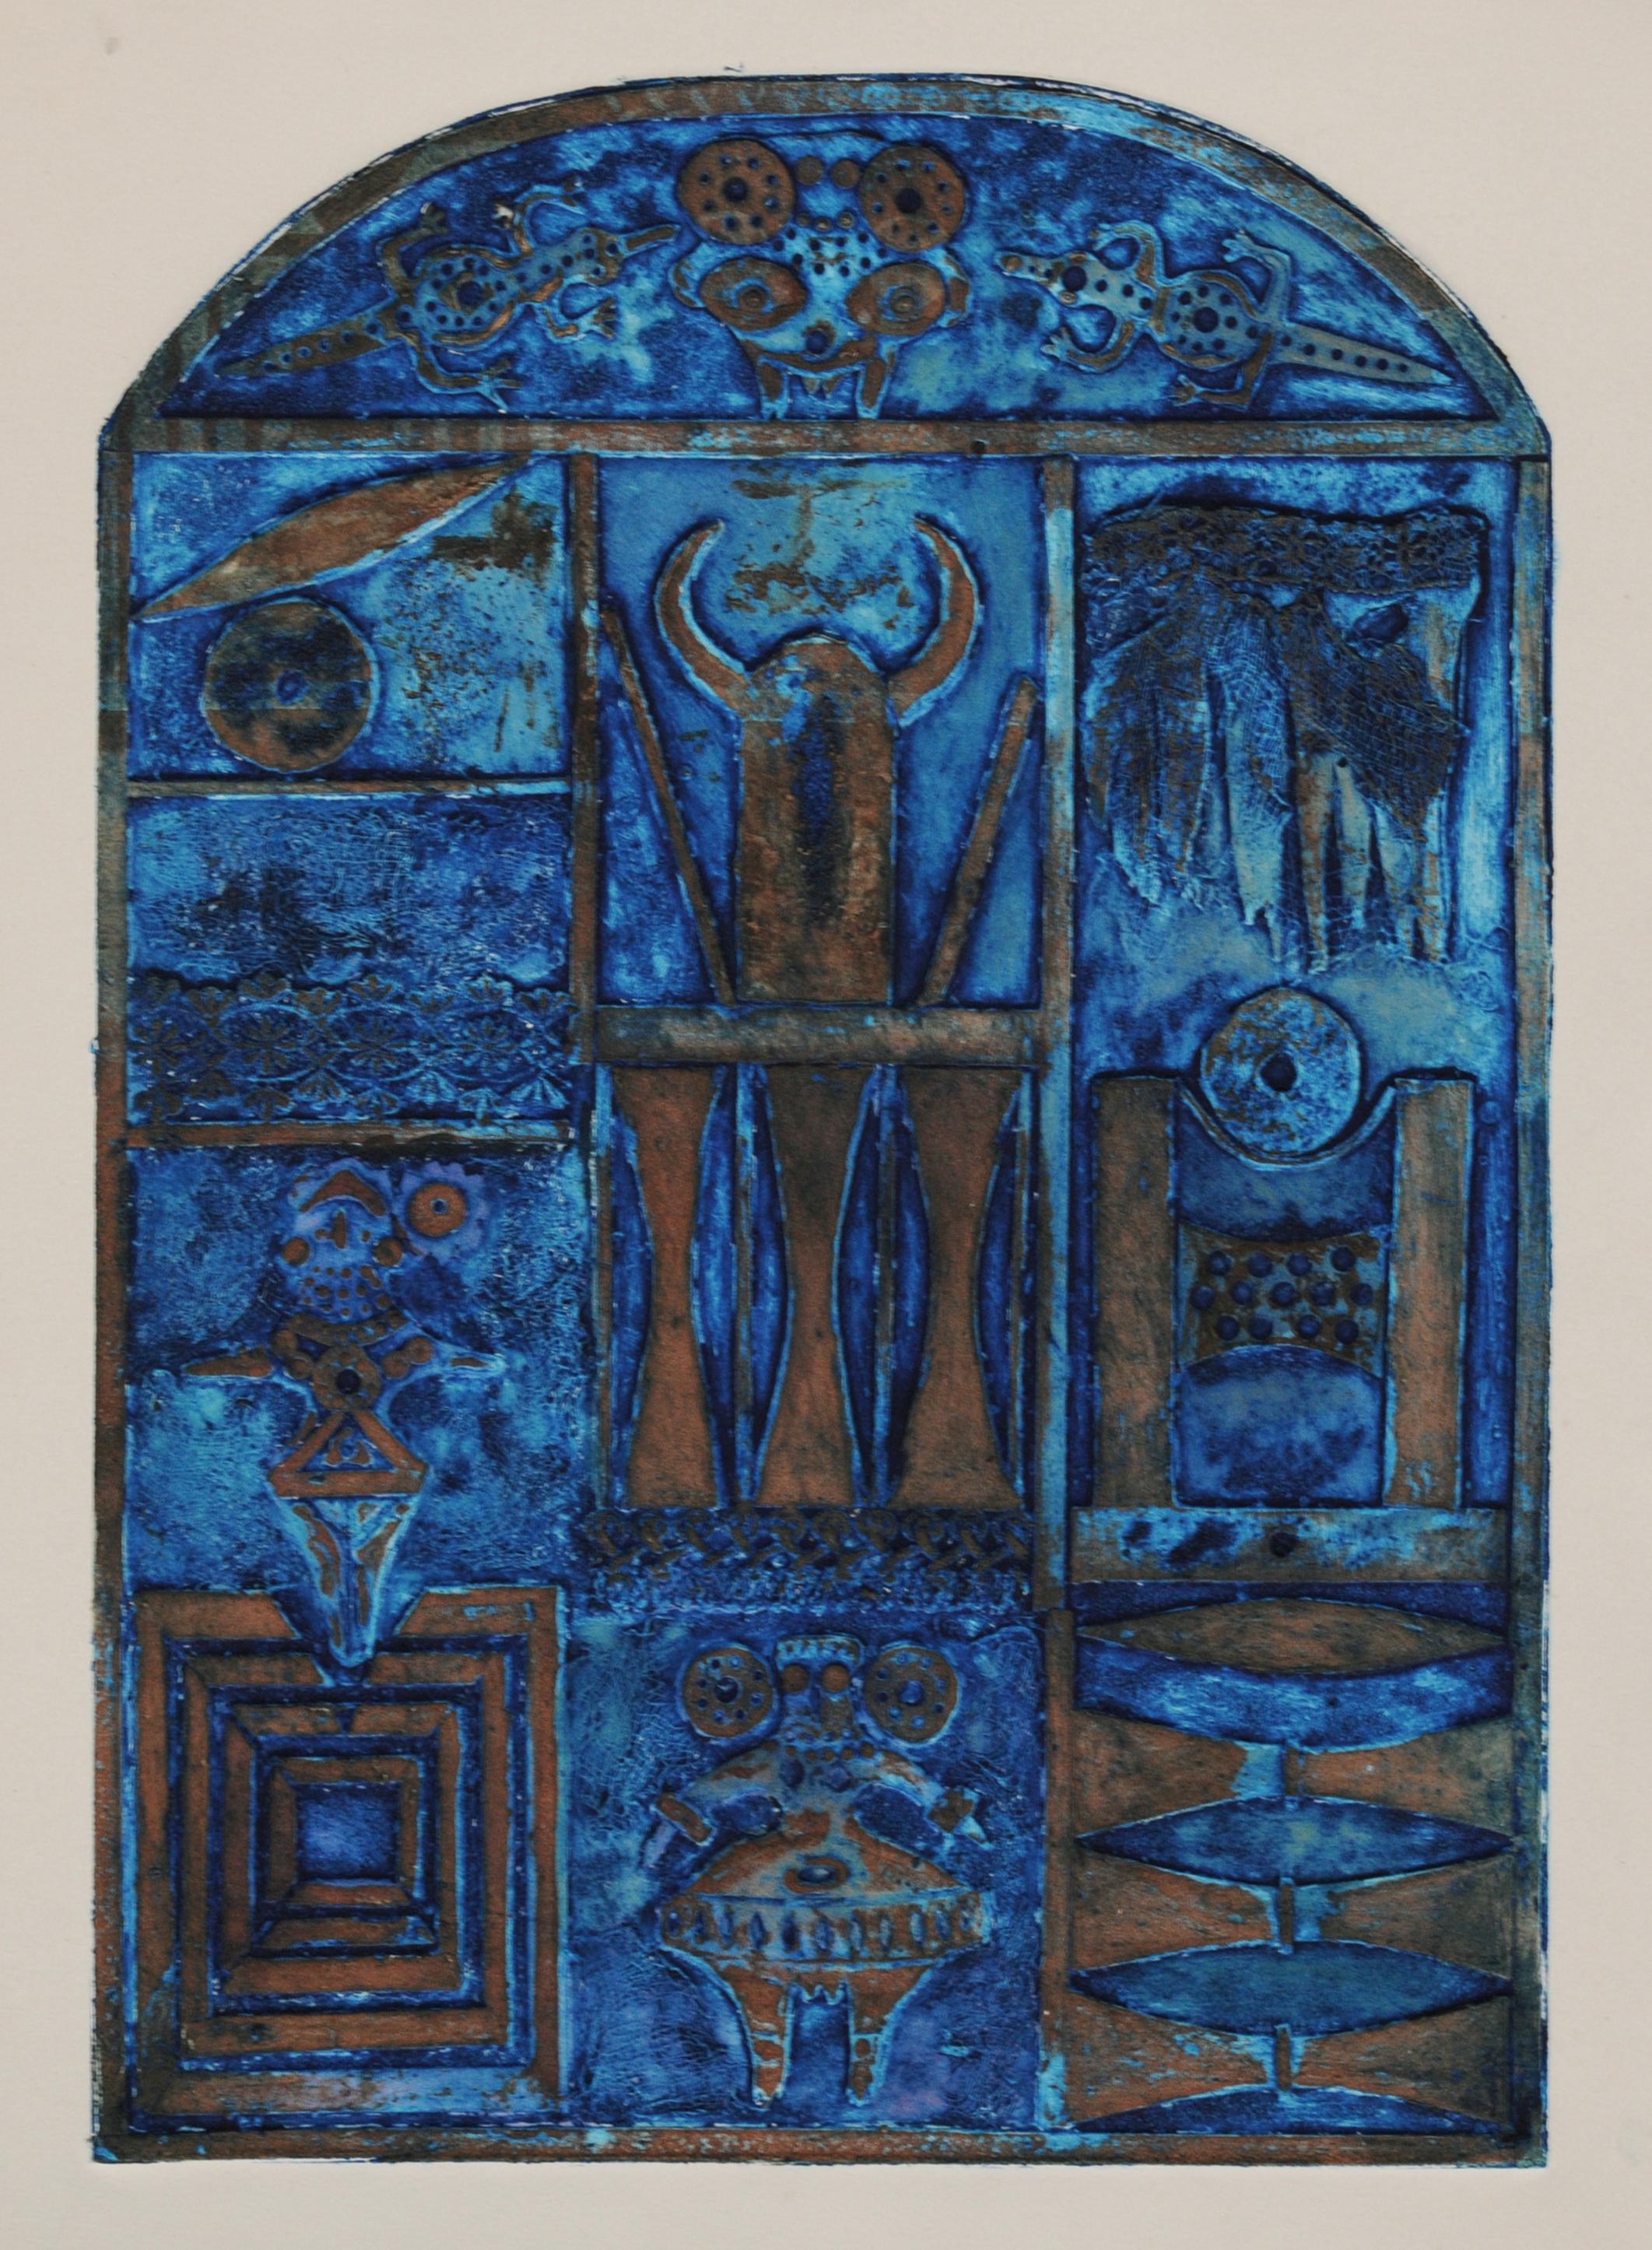 Noche Crist Figurative Print - Blue Collograph with Horns